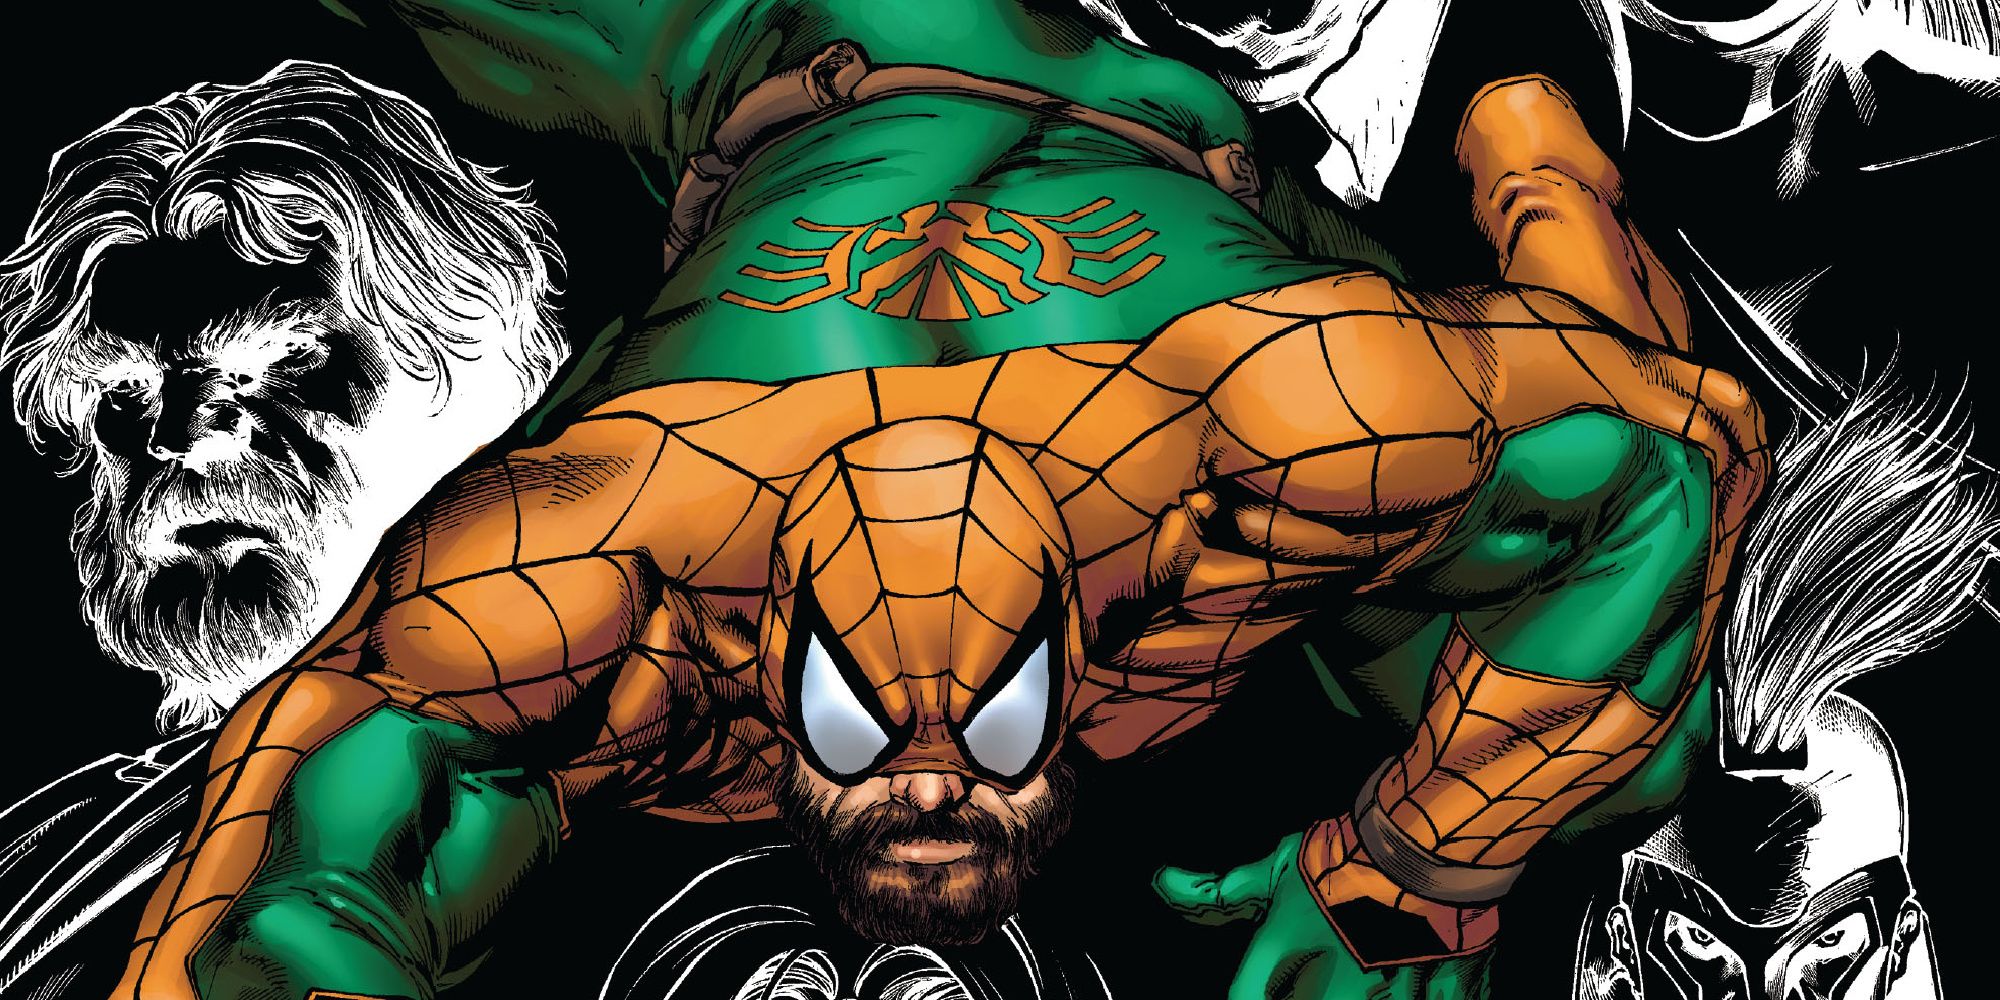 Hercules becomes Spider Herc in Marvel Comics.